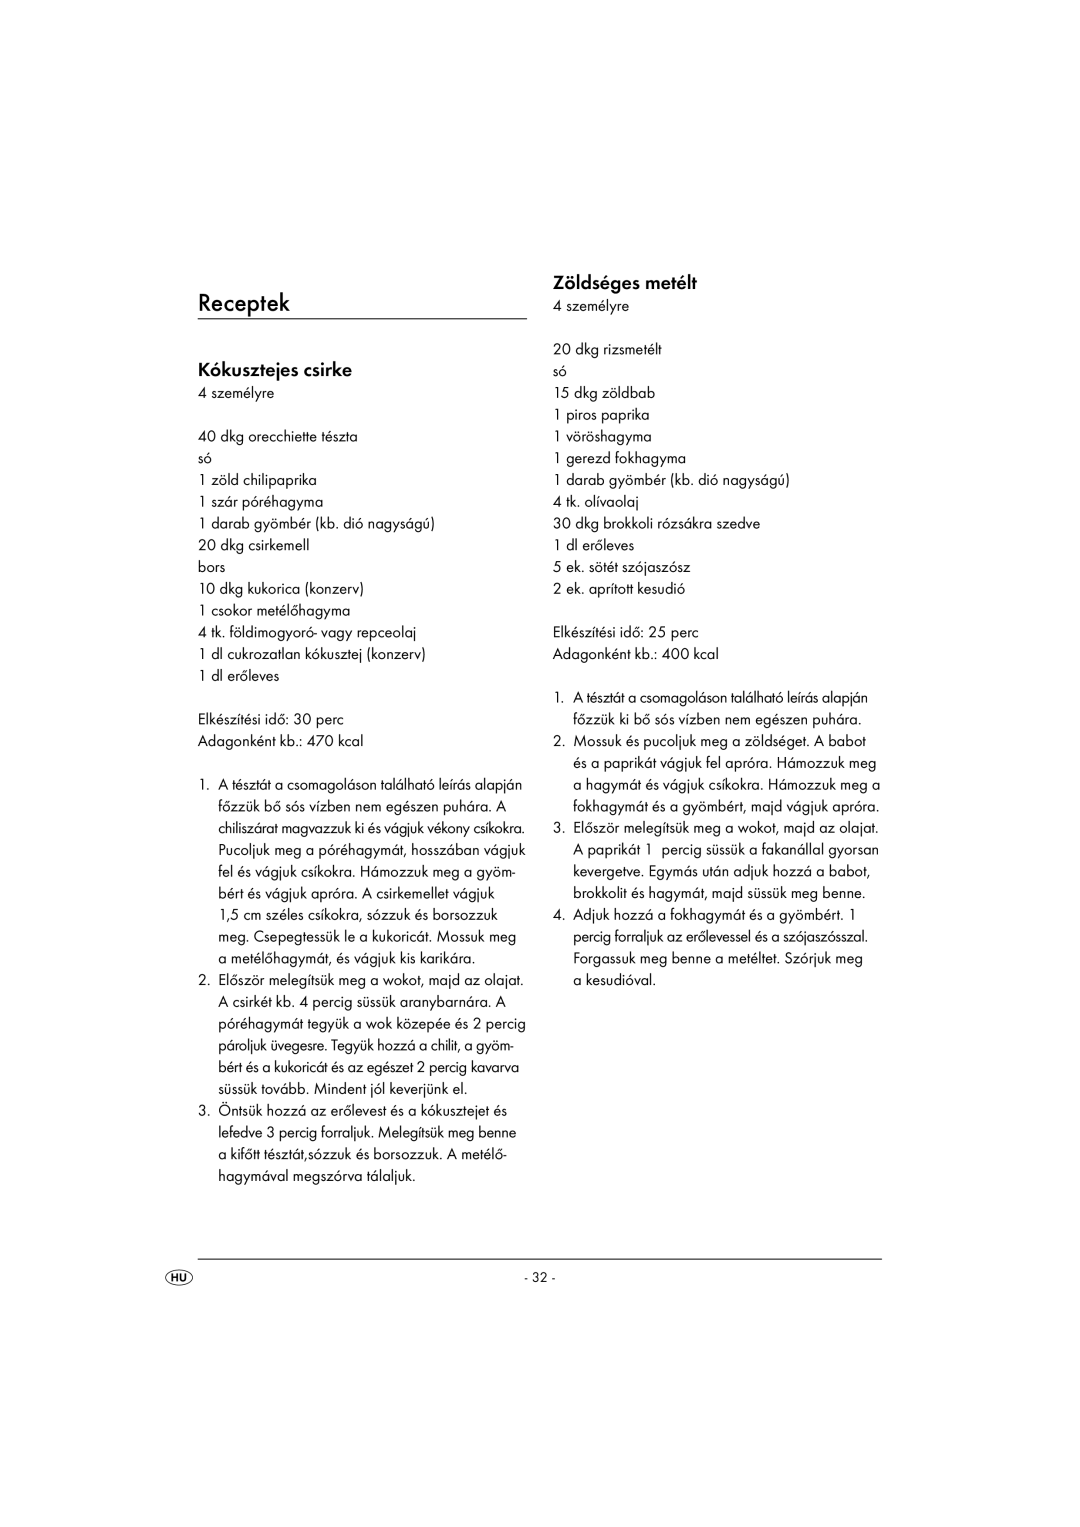 Kompernass KH 1099 manual Receptek, Kókusztejes csirke, Zöldséges metélt 